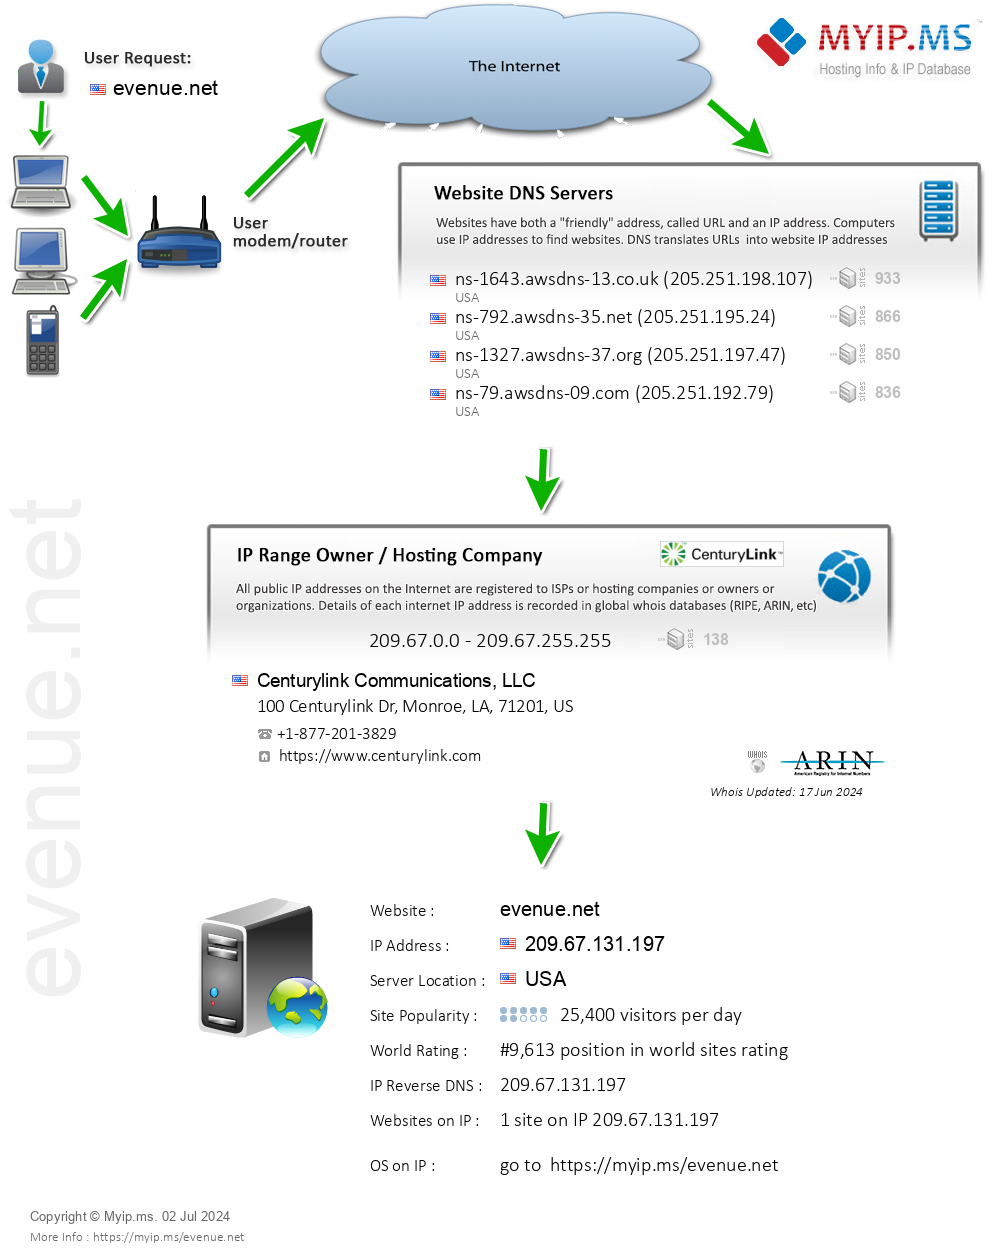 Evenue.net - Website Hosting Visual IP Diagram